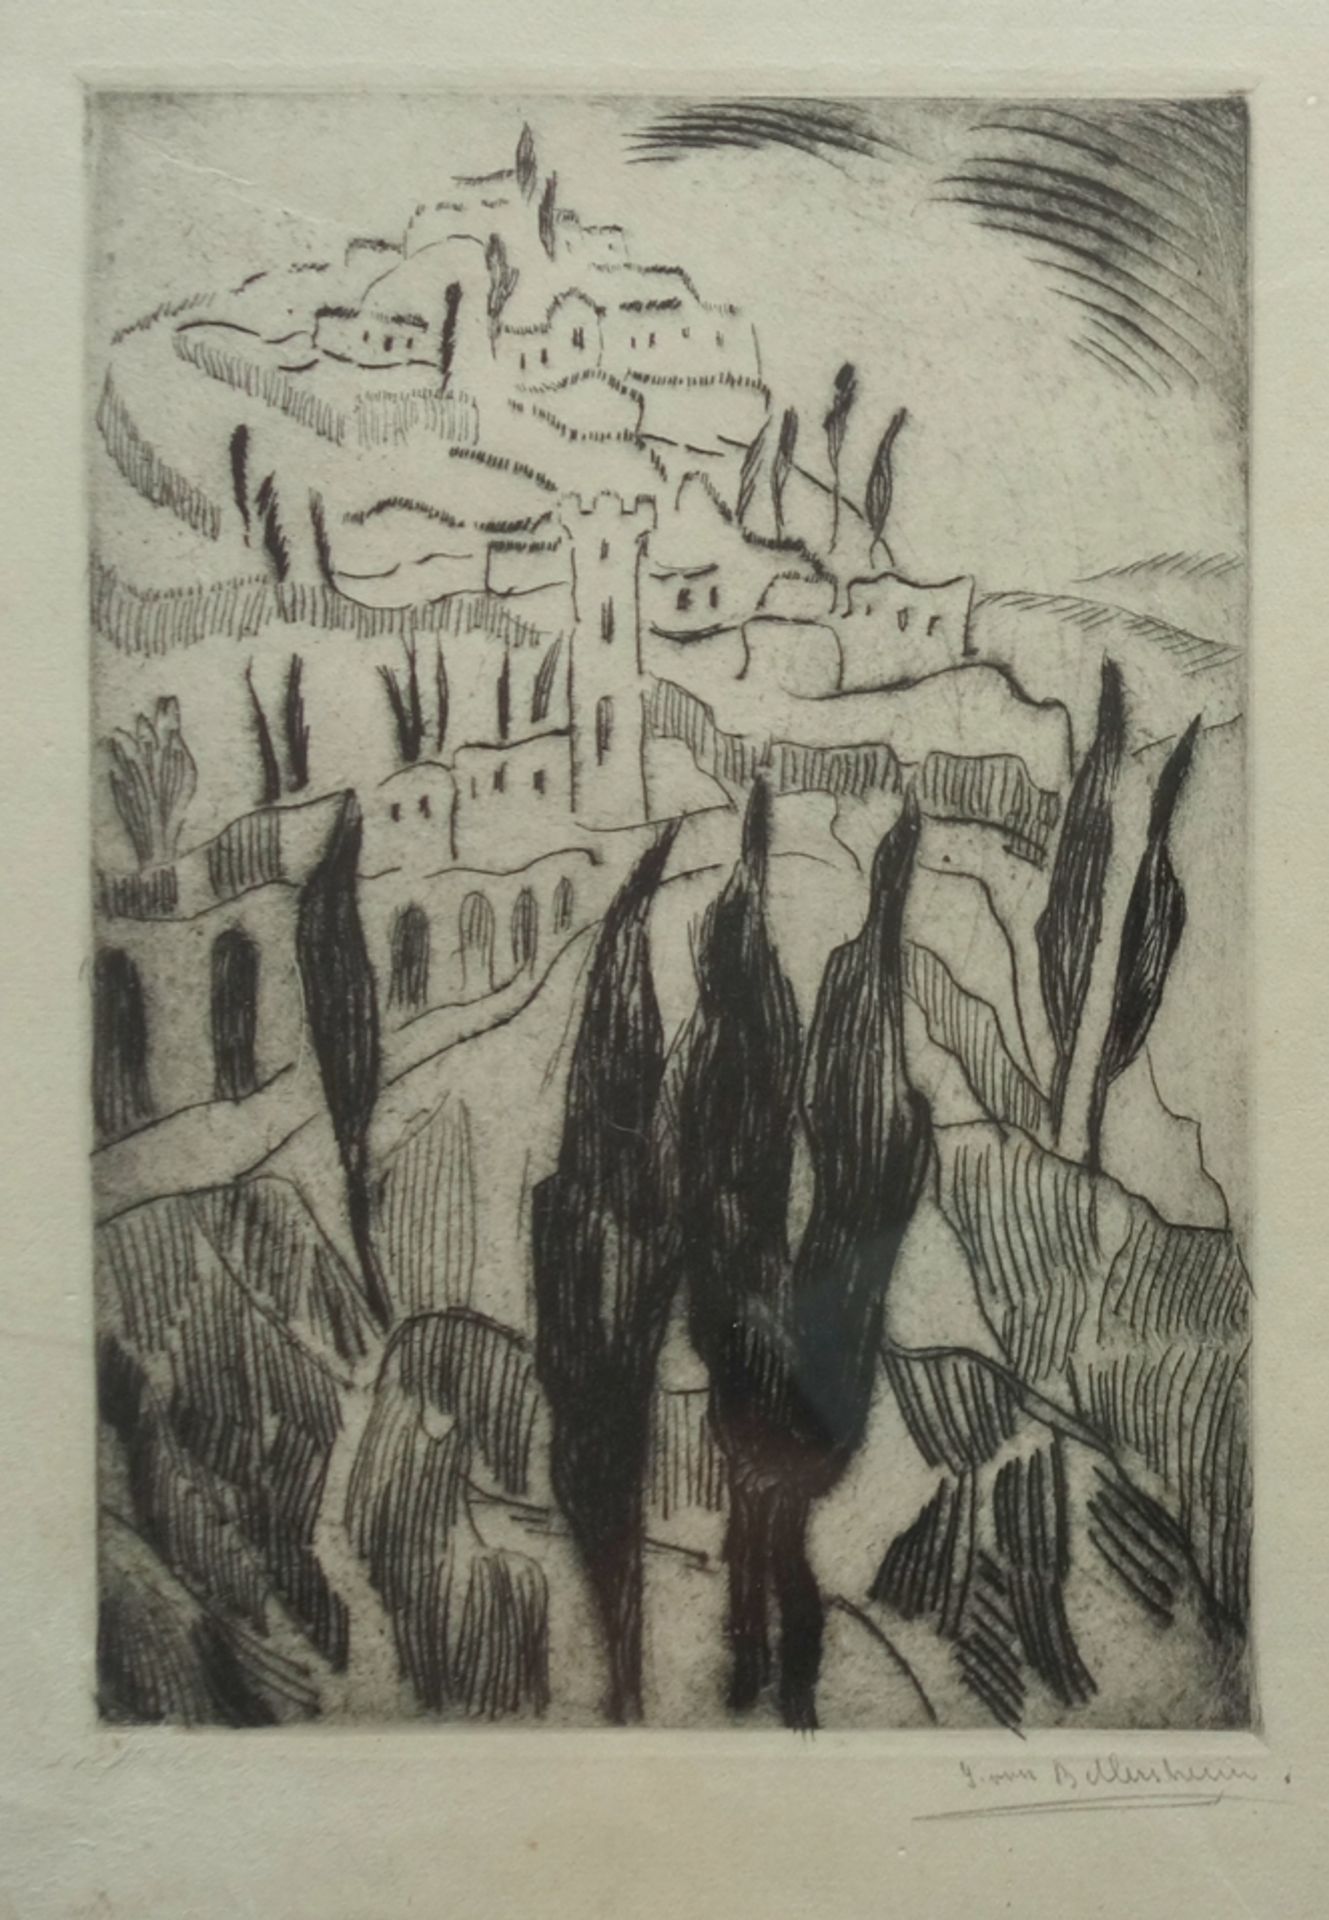 J. von Bellersheim (?), "Mediterranean Landscape", 1930s, etching